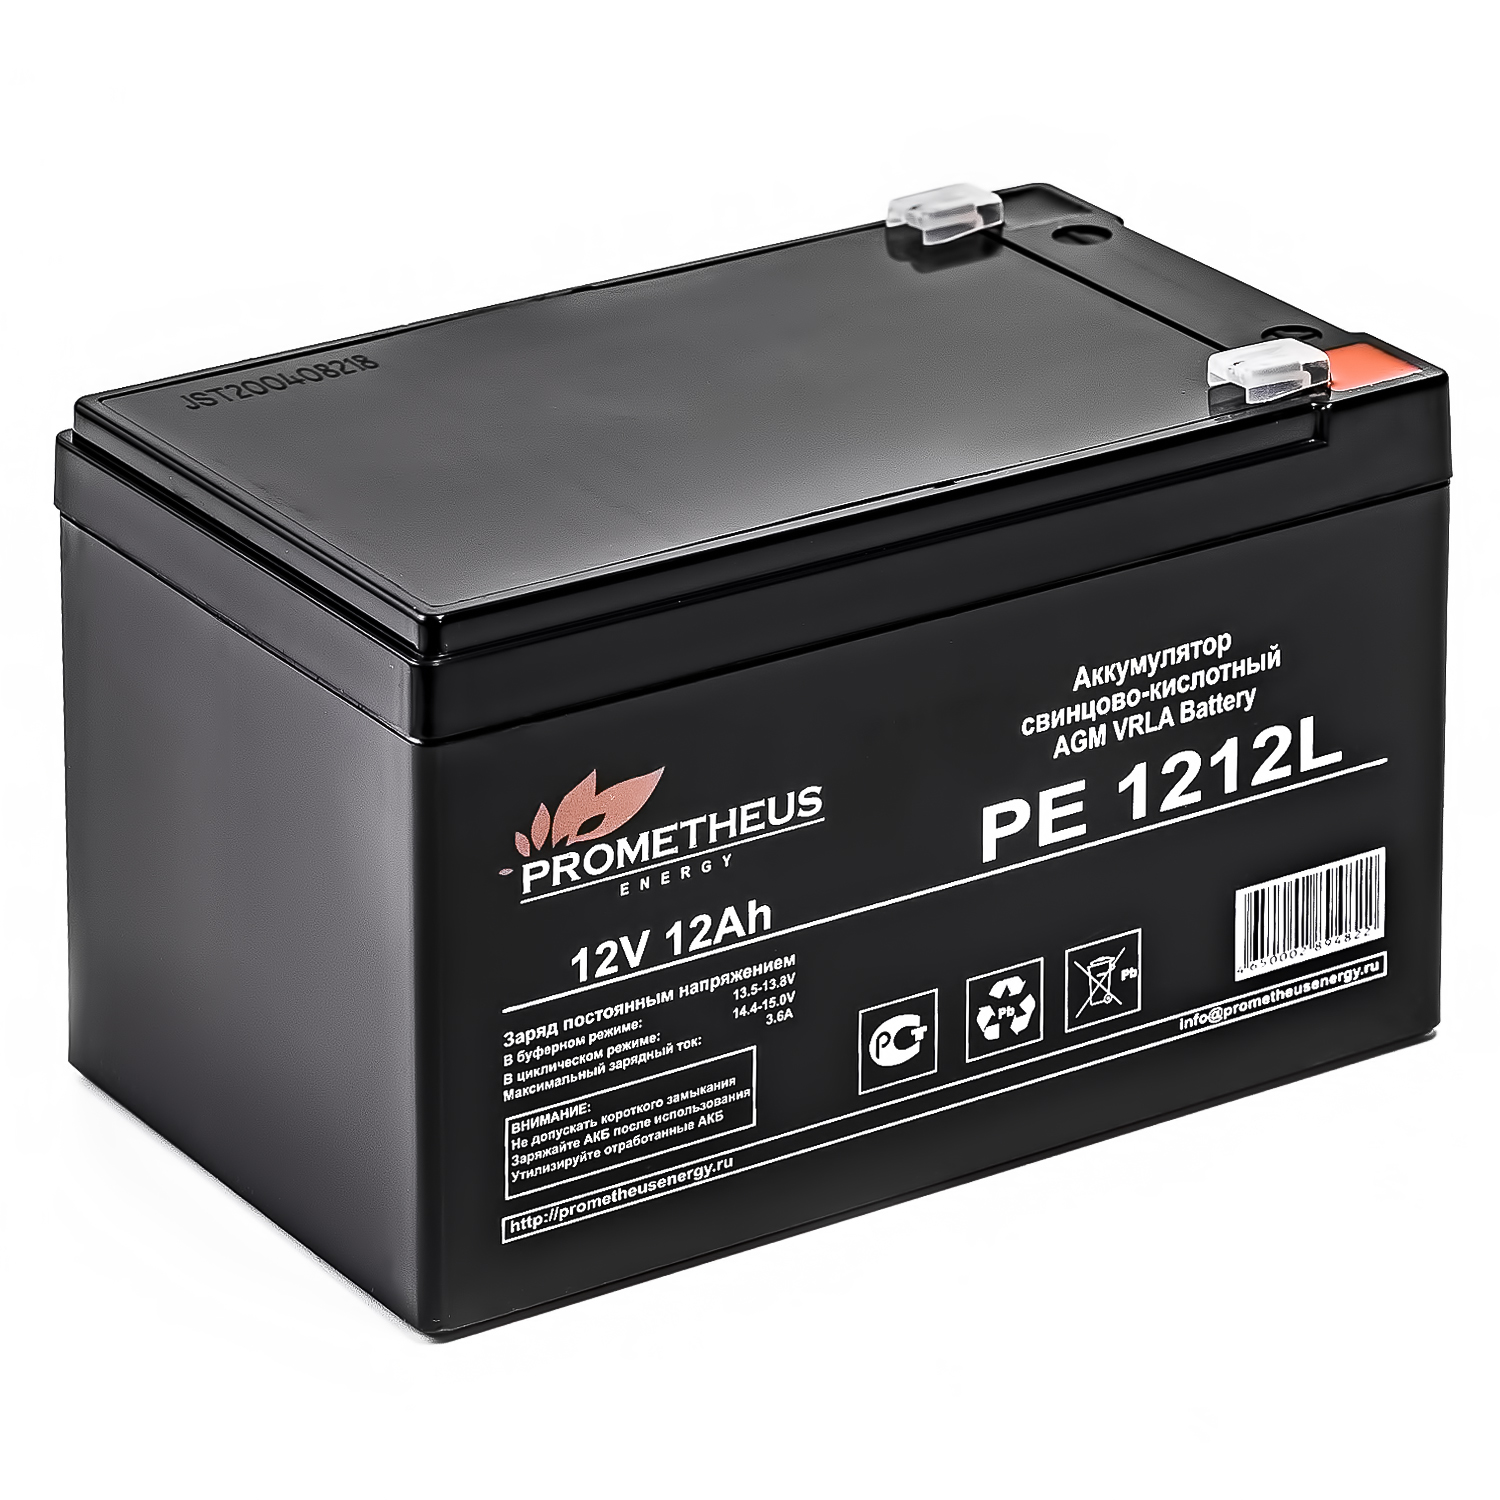 Батарея для ИБП Prometheus Energy PE 1212L 12В 12Ач цена и фото